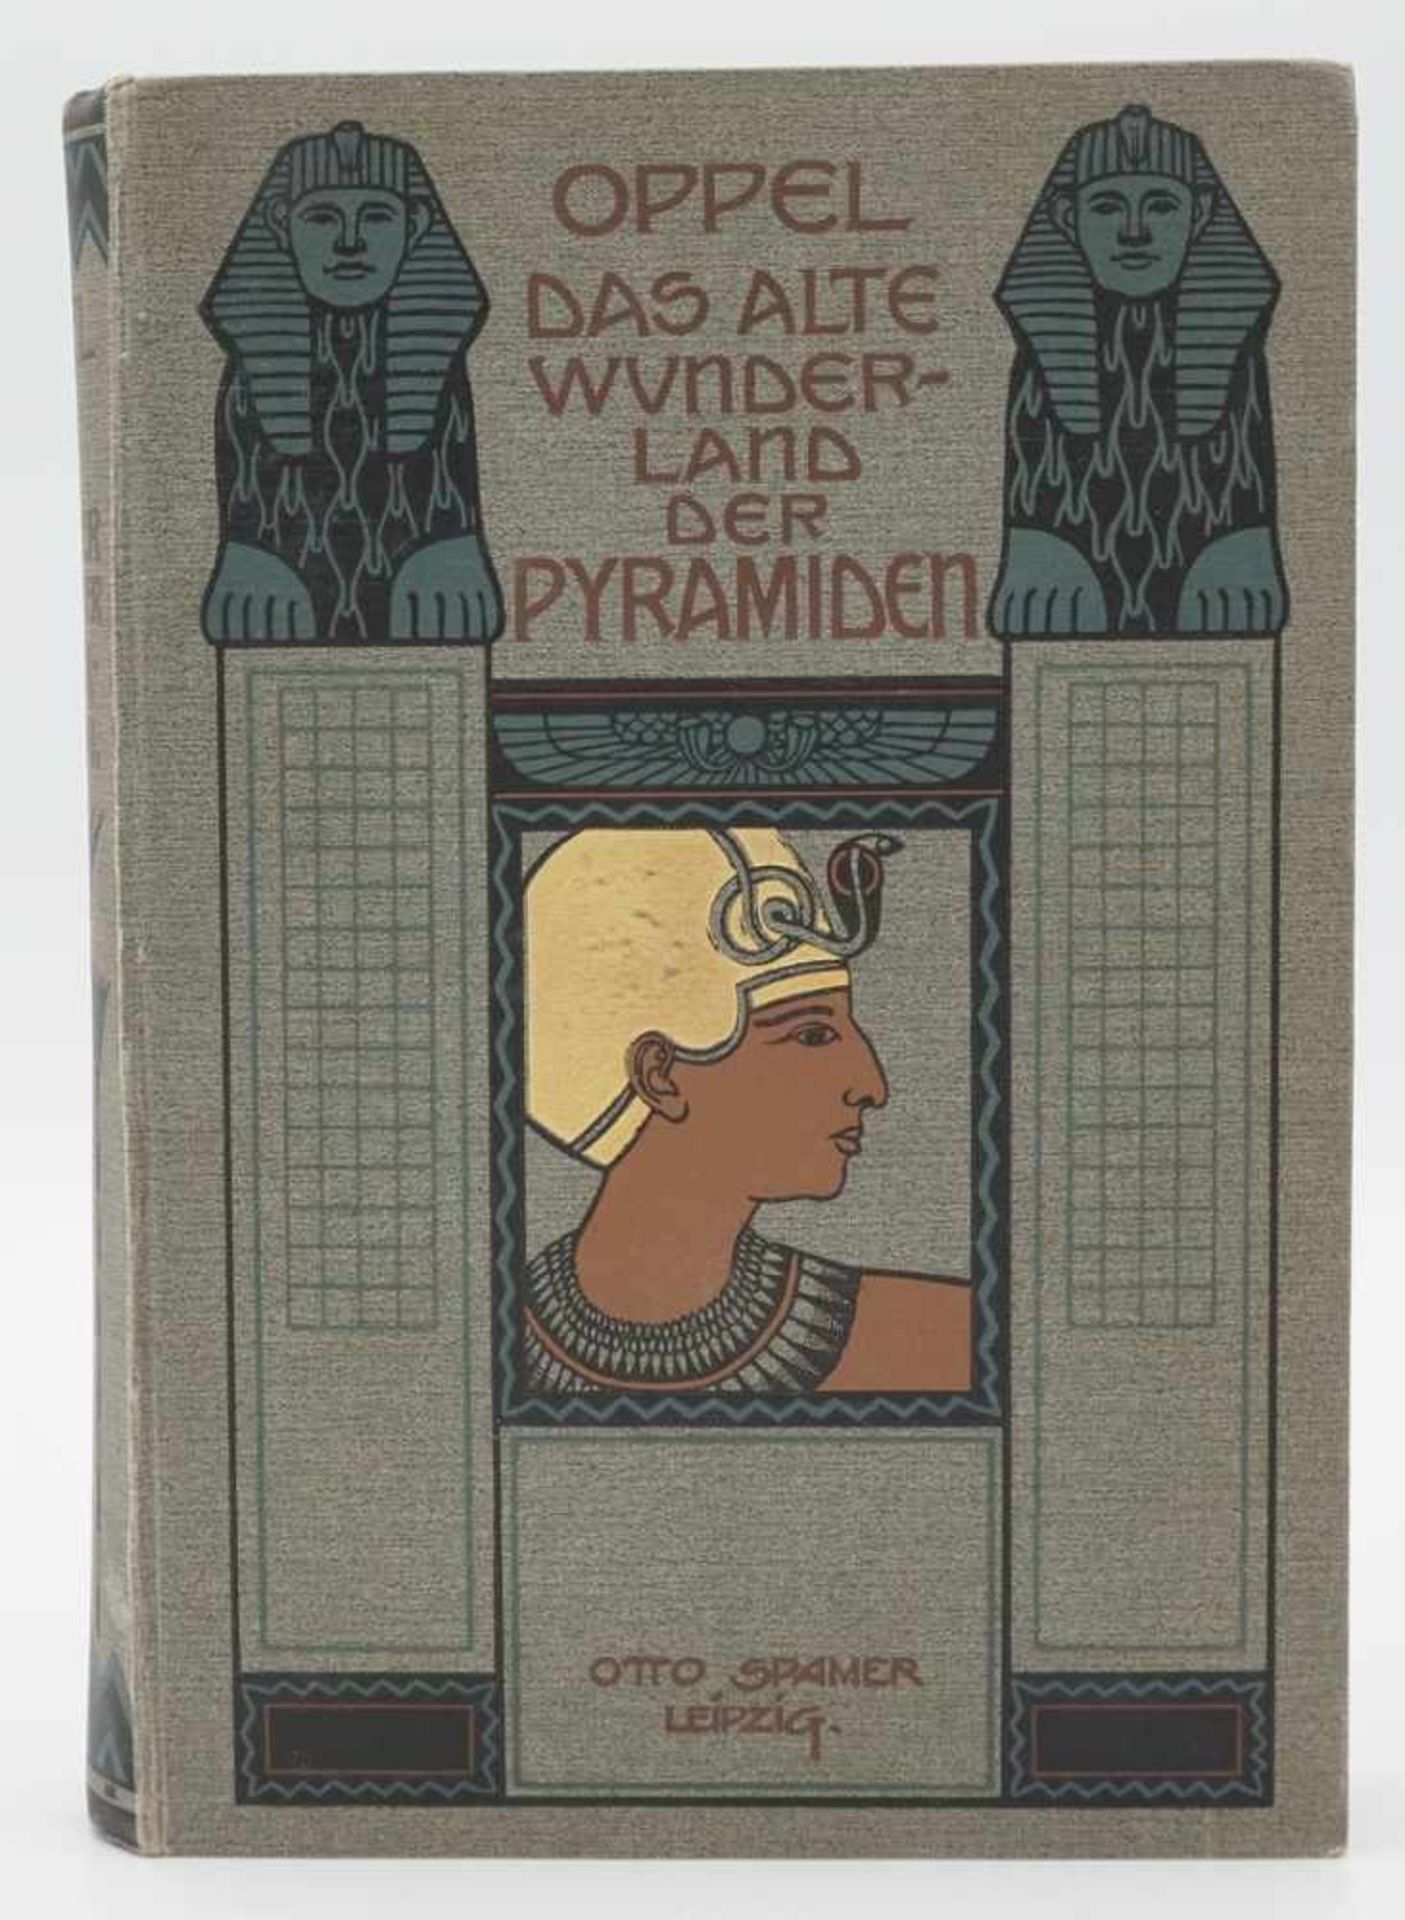 Dr. Karl Oppel, "Das alte Wunderland der Pyramiden"1906, geografische, politische und